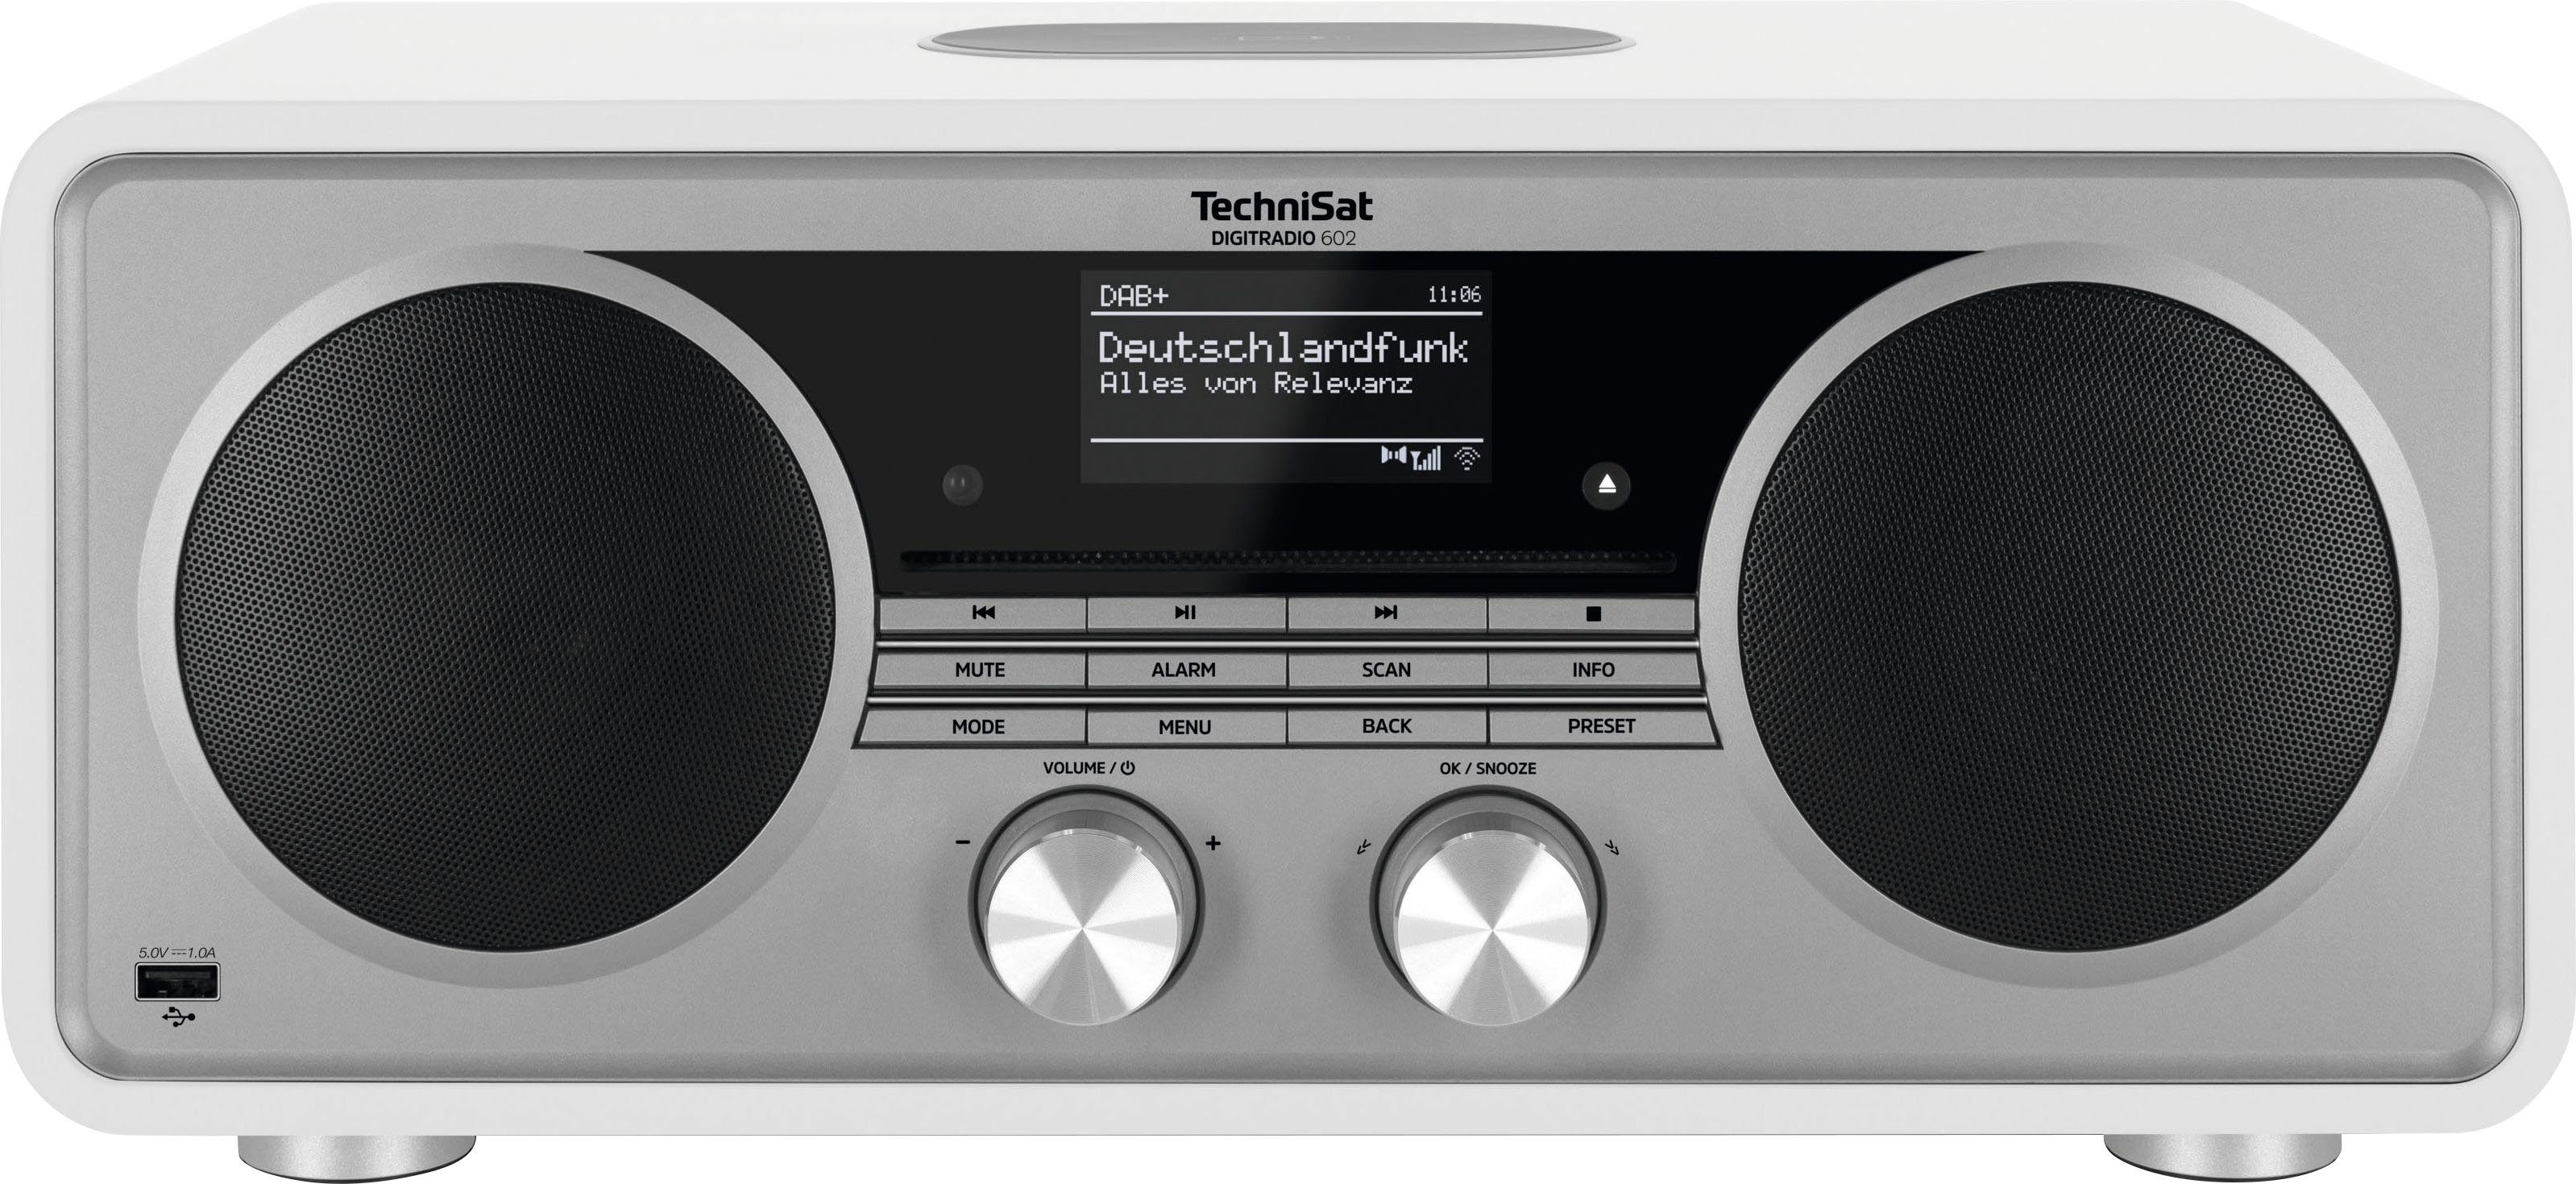 TechniSat DIGITRADIO 602 Internet-Radio UKW 70 (Digitalradio Stereoanlage, (DAB), mit Weiß/Silber W, CD-Player) RDS